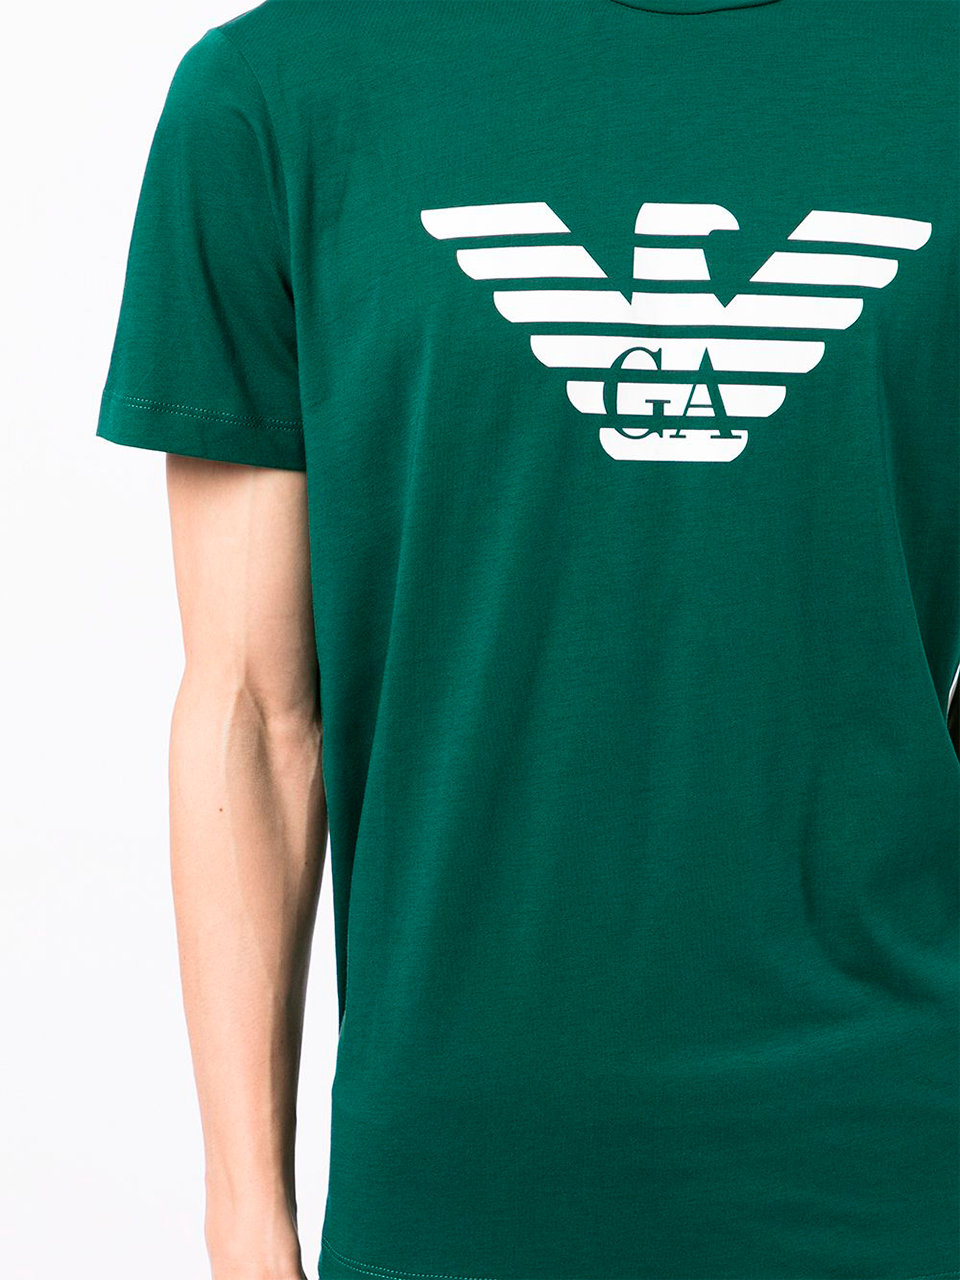 Imagem de: Camiseta Emporio Armani Verde com Estampa